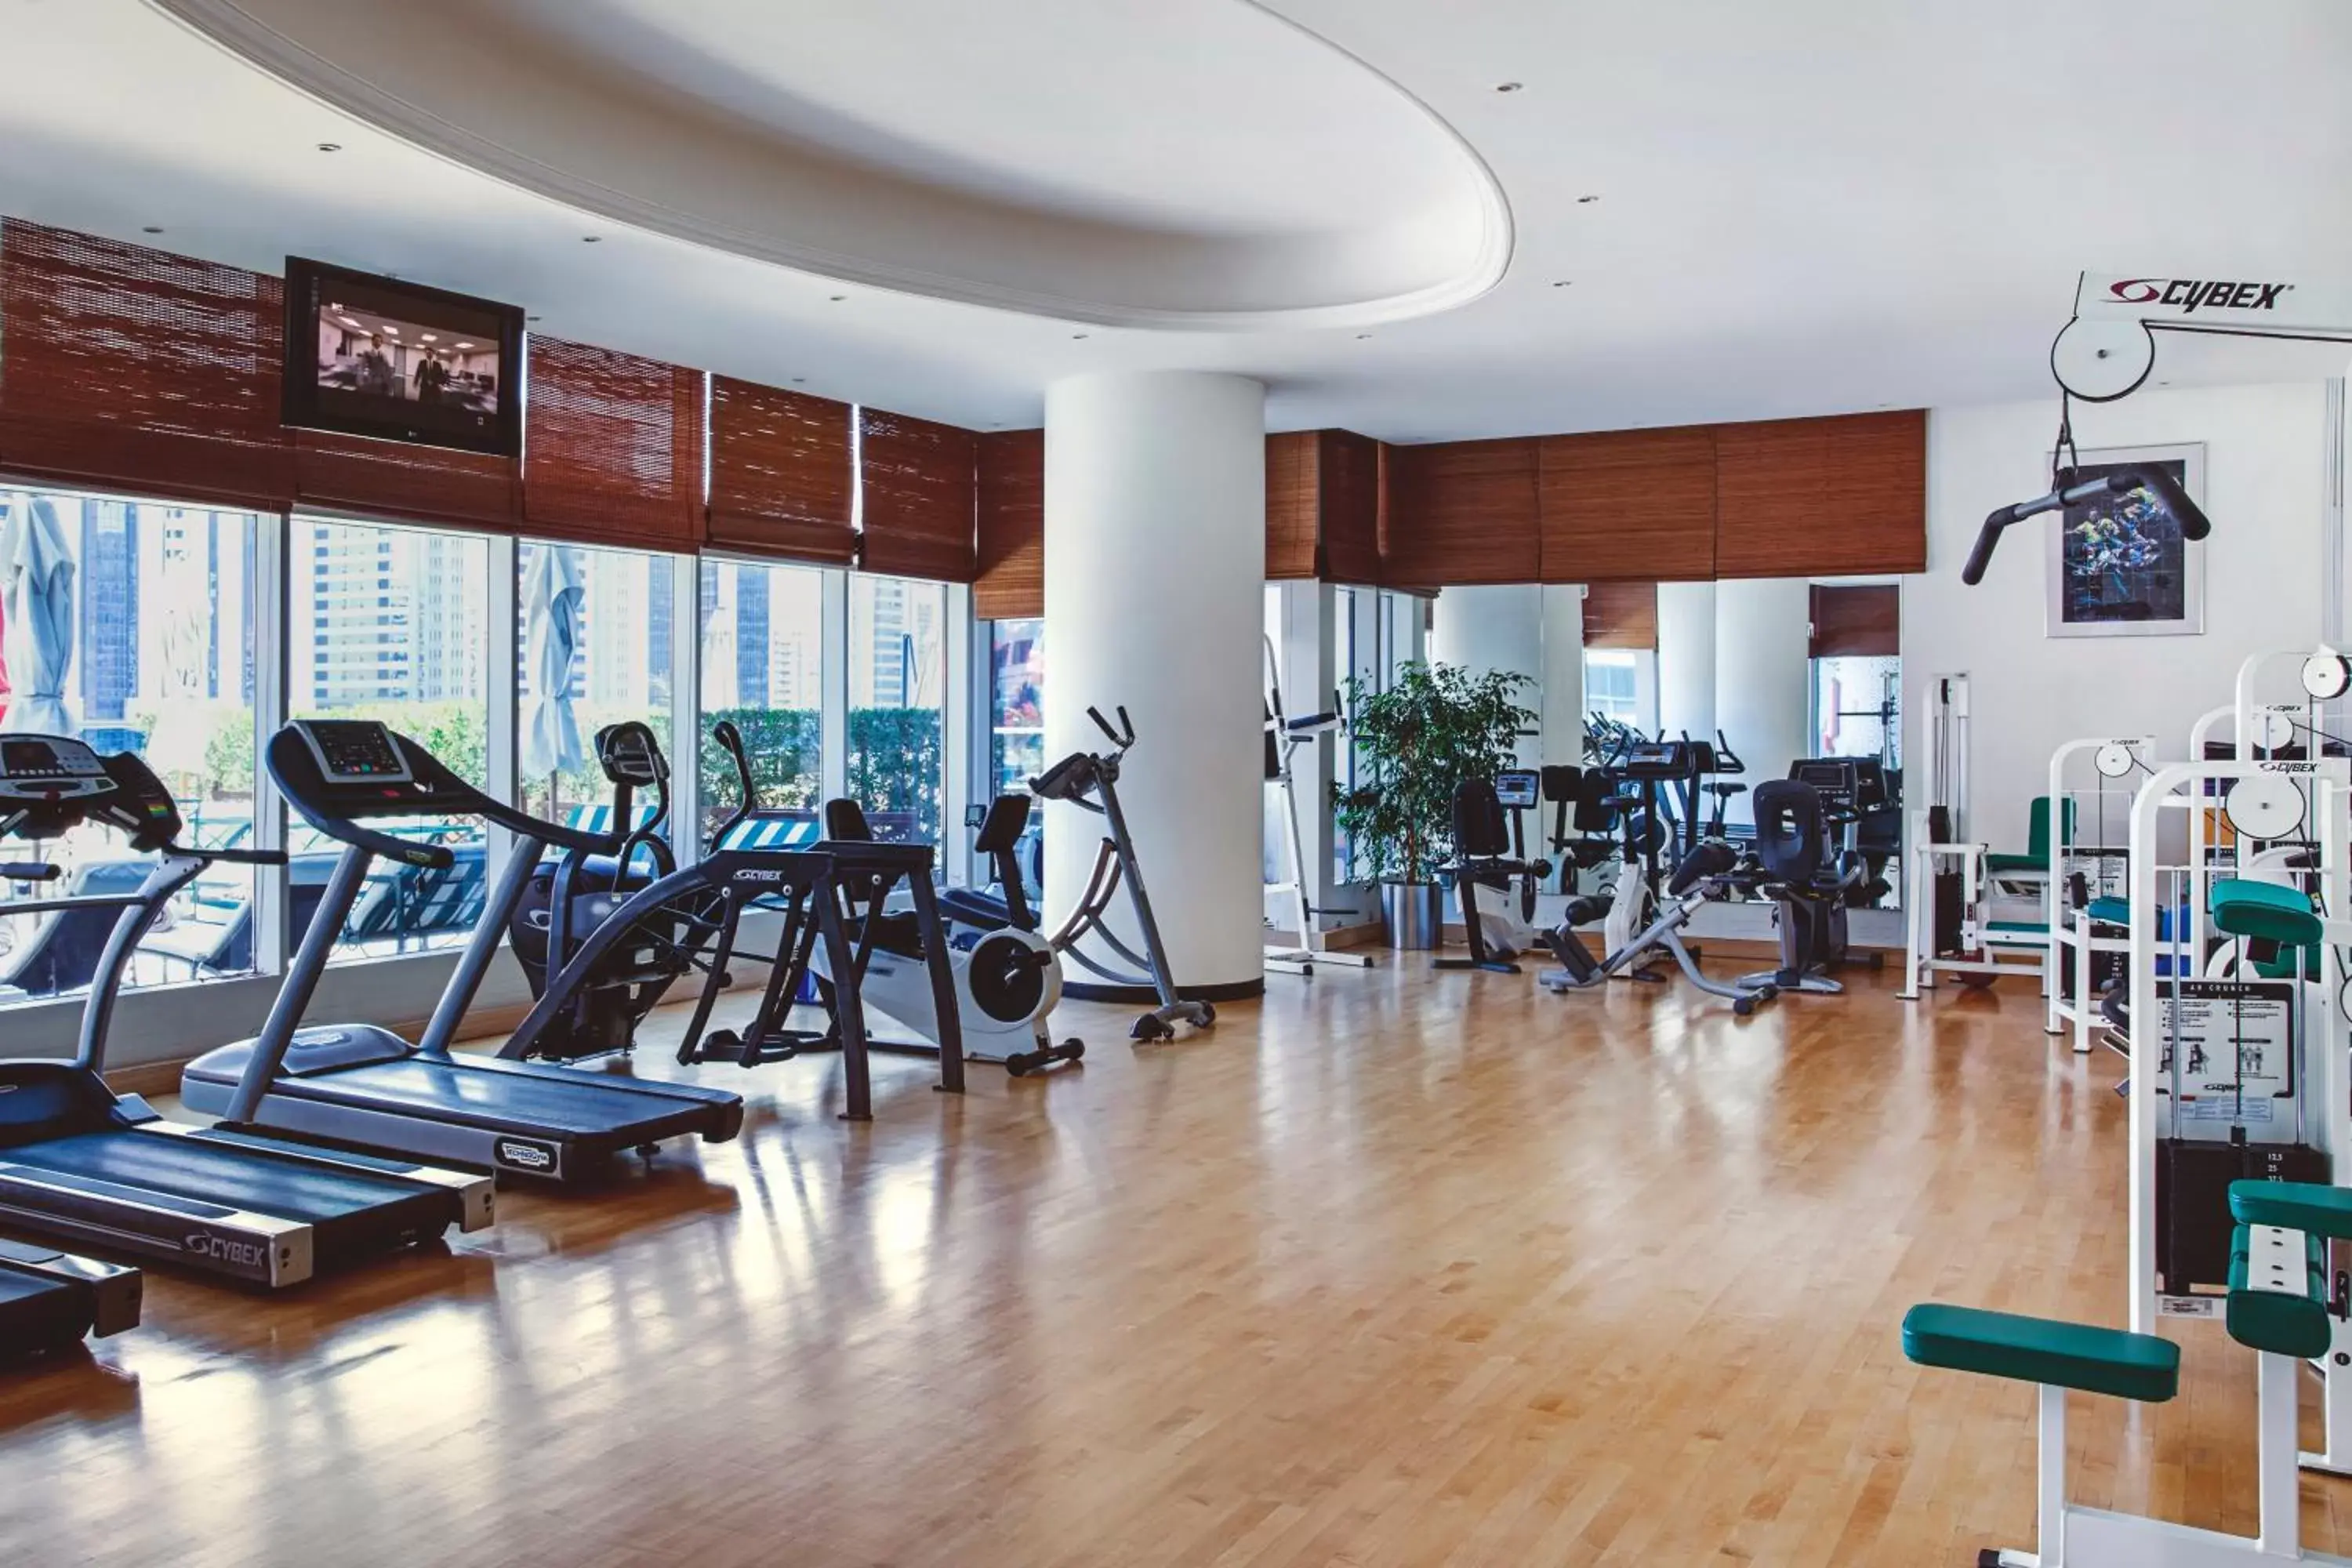 Fitness centre/facilities, Fitness Center/Facilities in Corniche Hotel Abu Dhabi